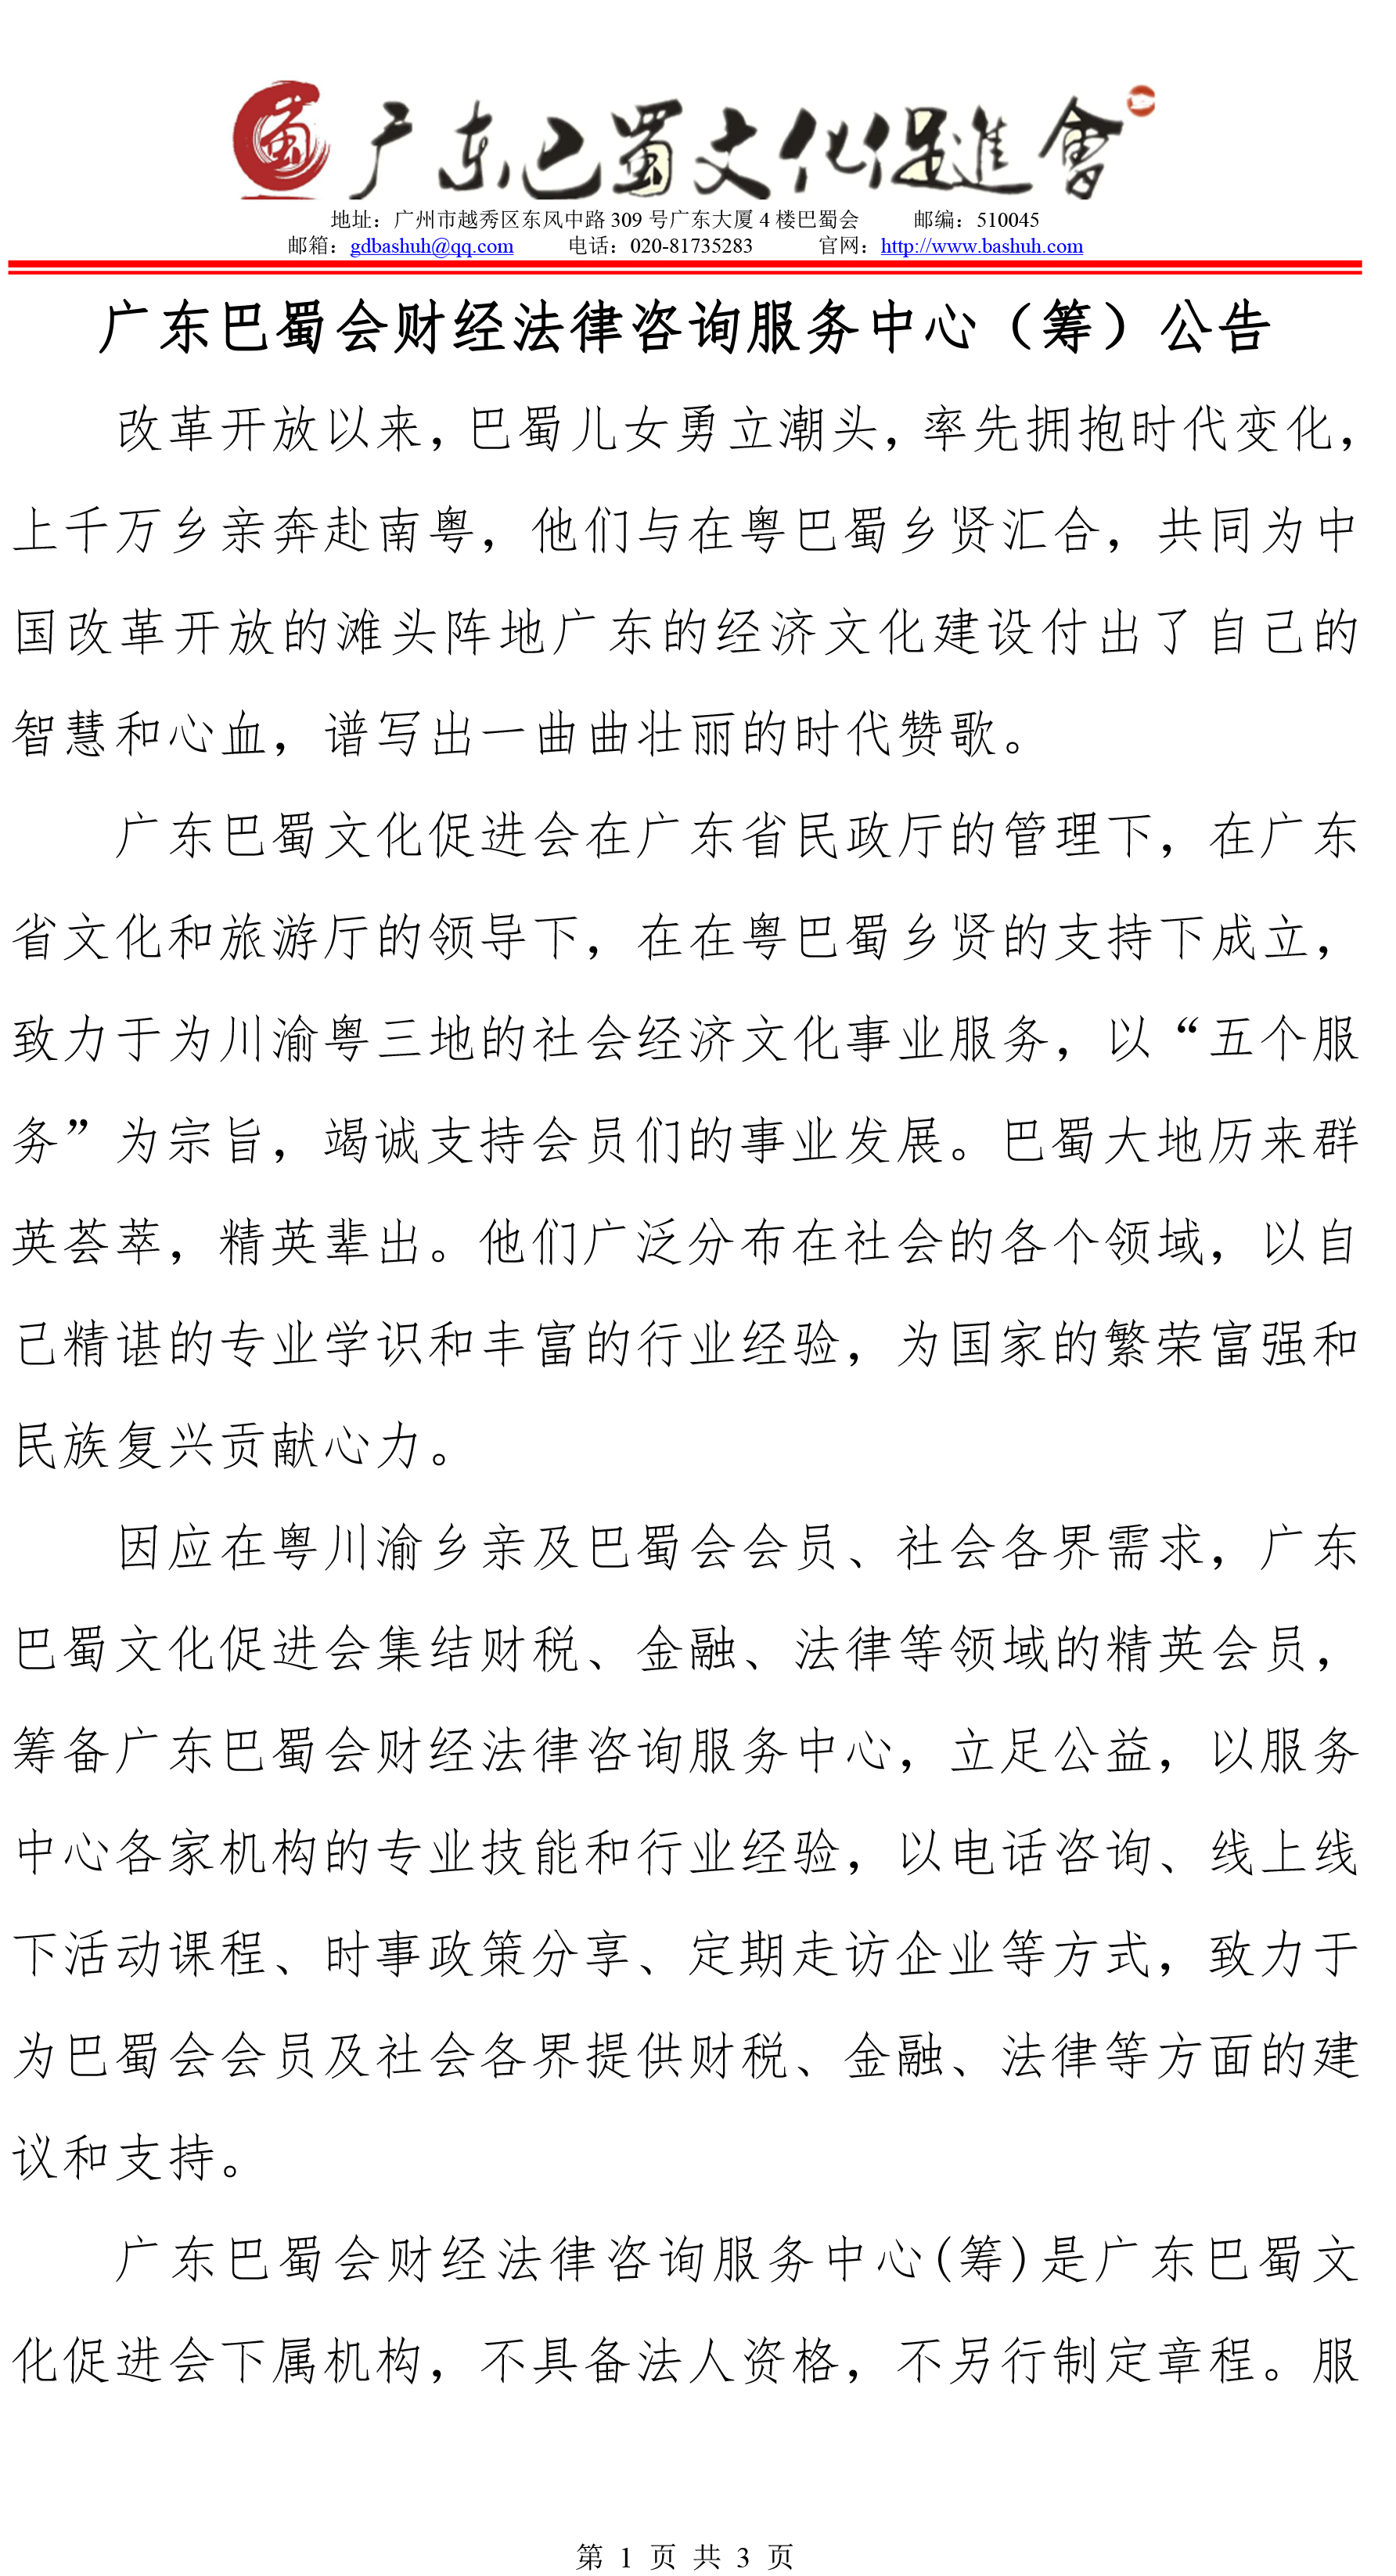 公告 广东巴蜀会财经法律咨询服务中心(合并PDF)-1.jpg